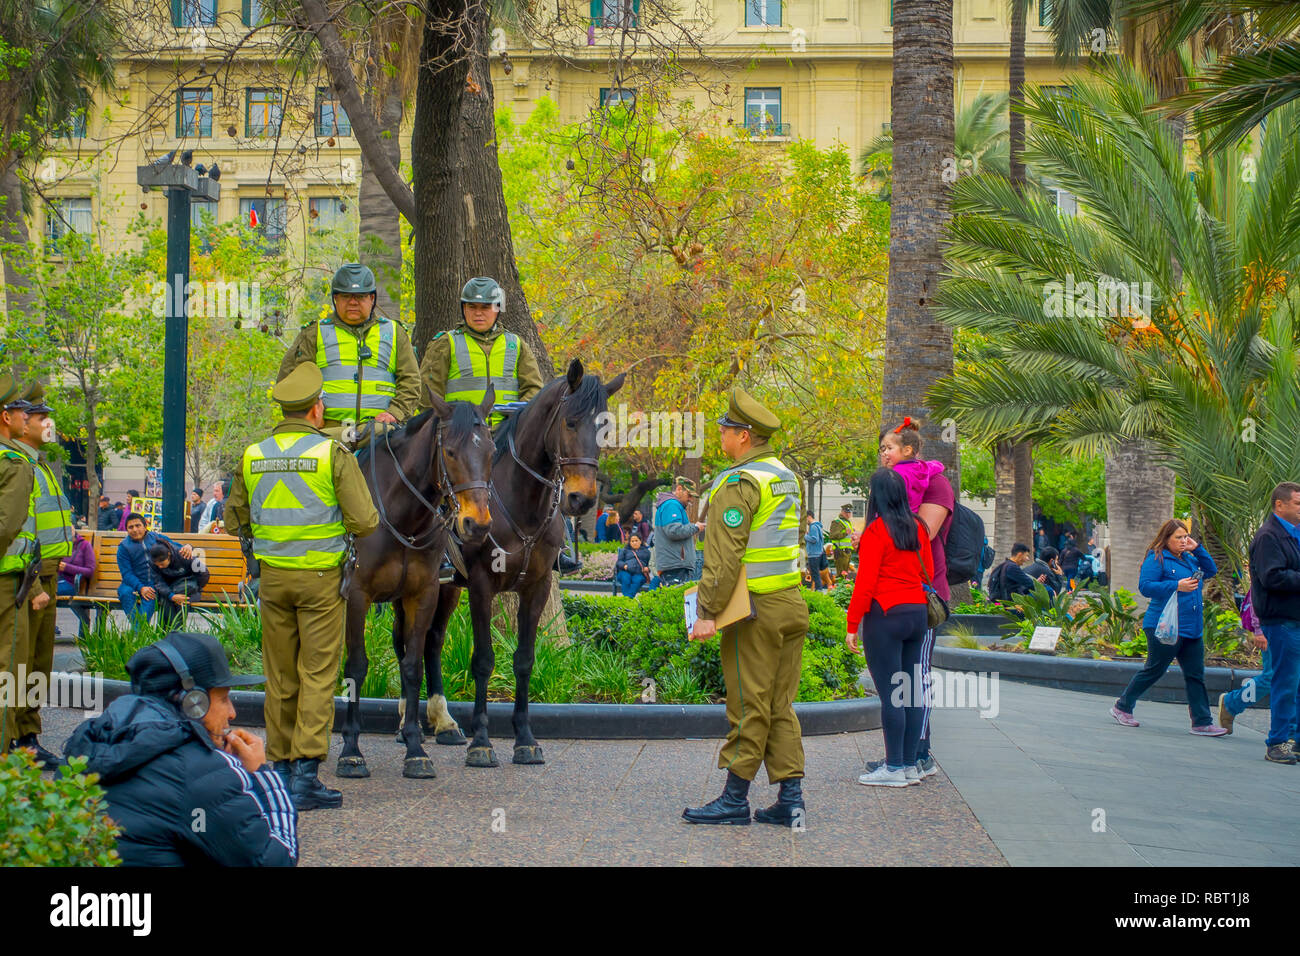 SANTIAGO, CHILI - 13 septembre 2018 : vue extérieure de la police appelé comme les carabiniers à cheval au centre-ville de la ville de Santiago du Chili Banque D'Images